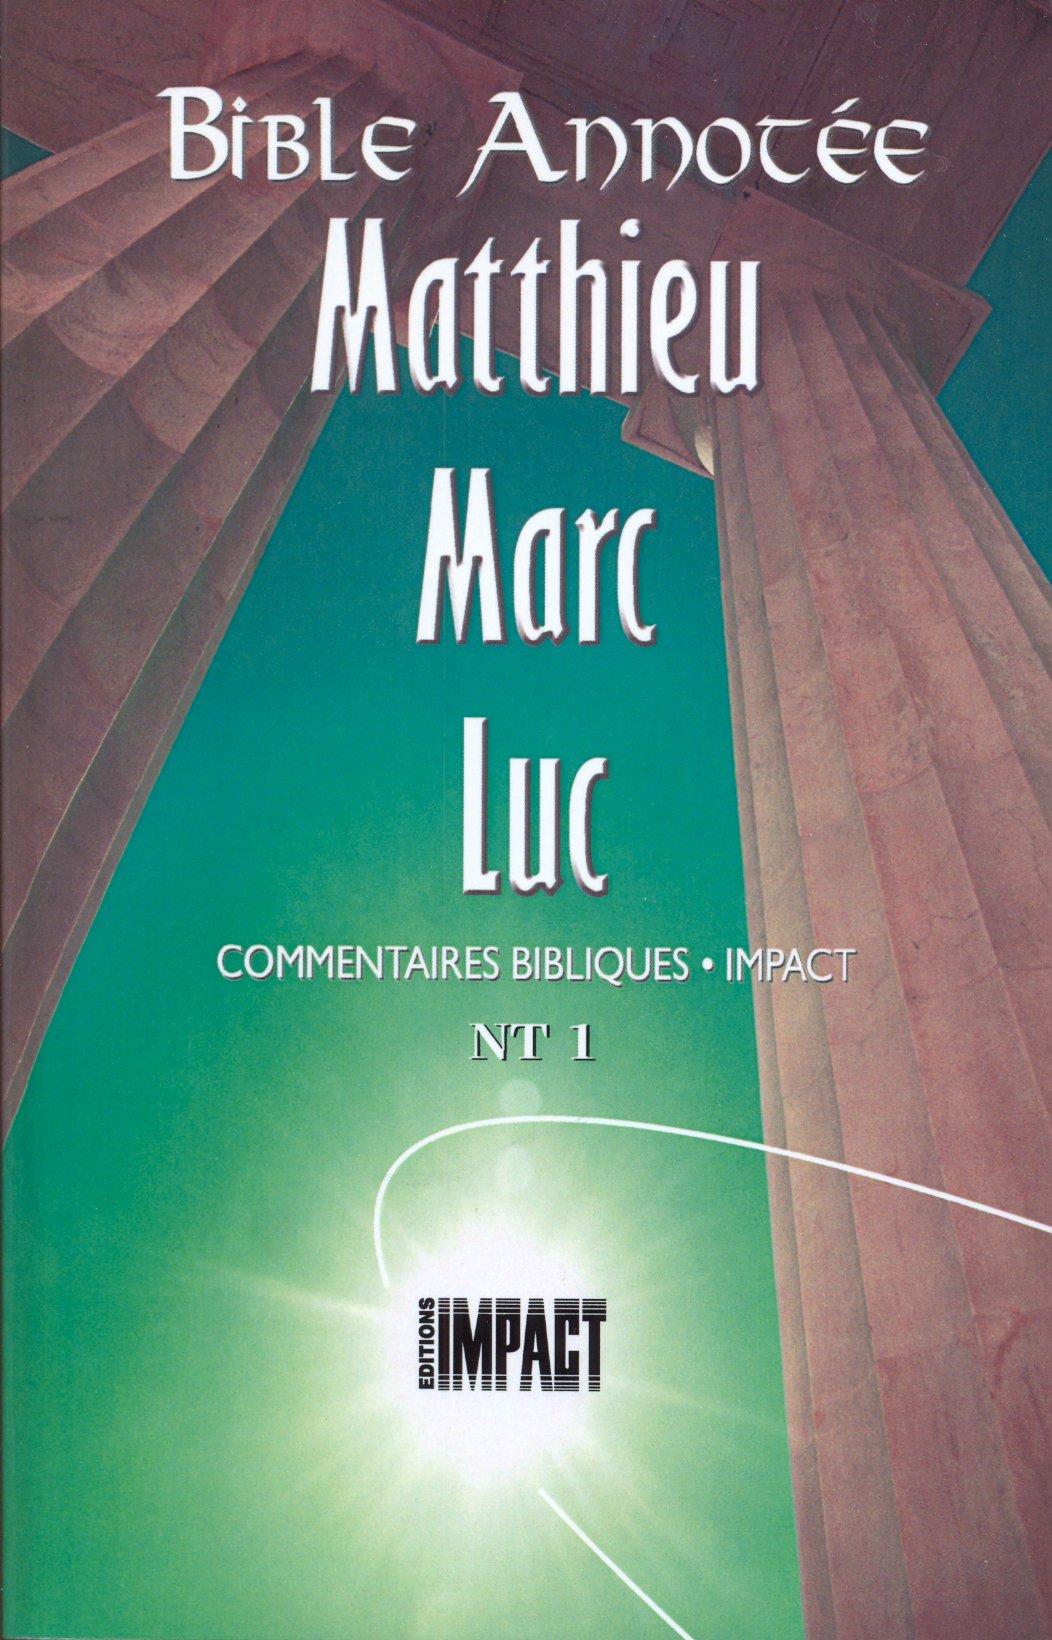 Bible annotée (La), Matthieu, Marc, Luc - Commentaires bibliques Impact NT 1